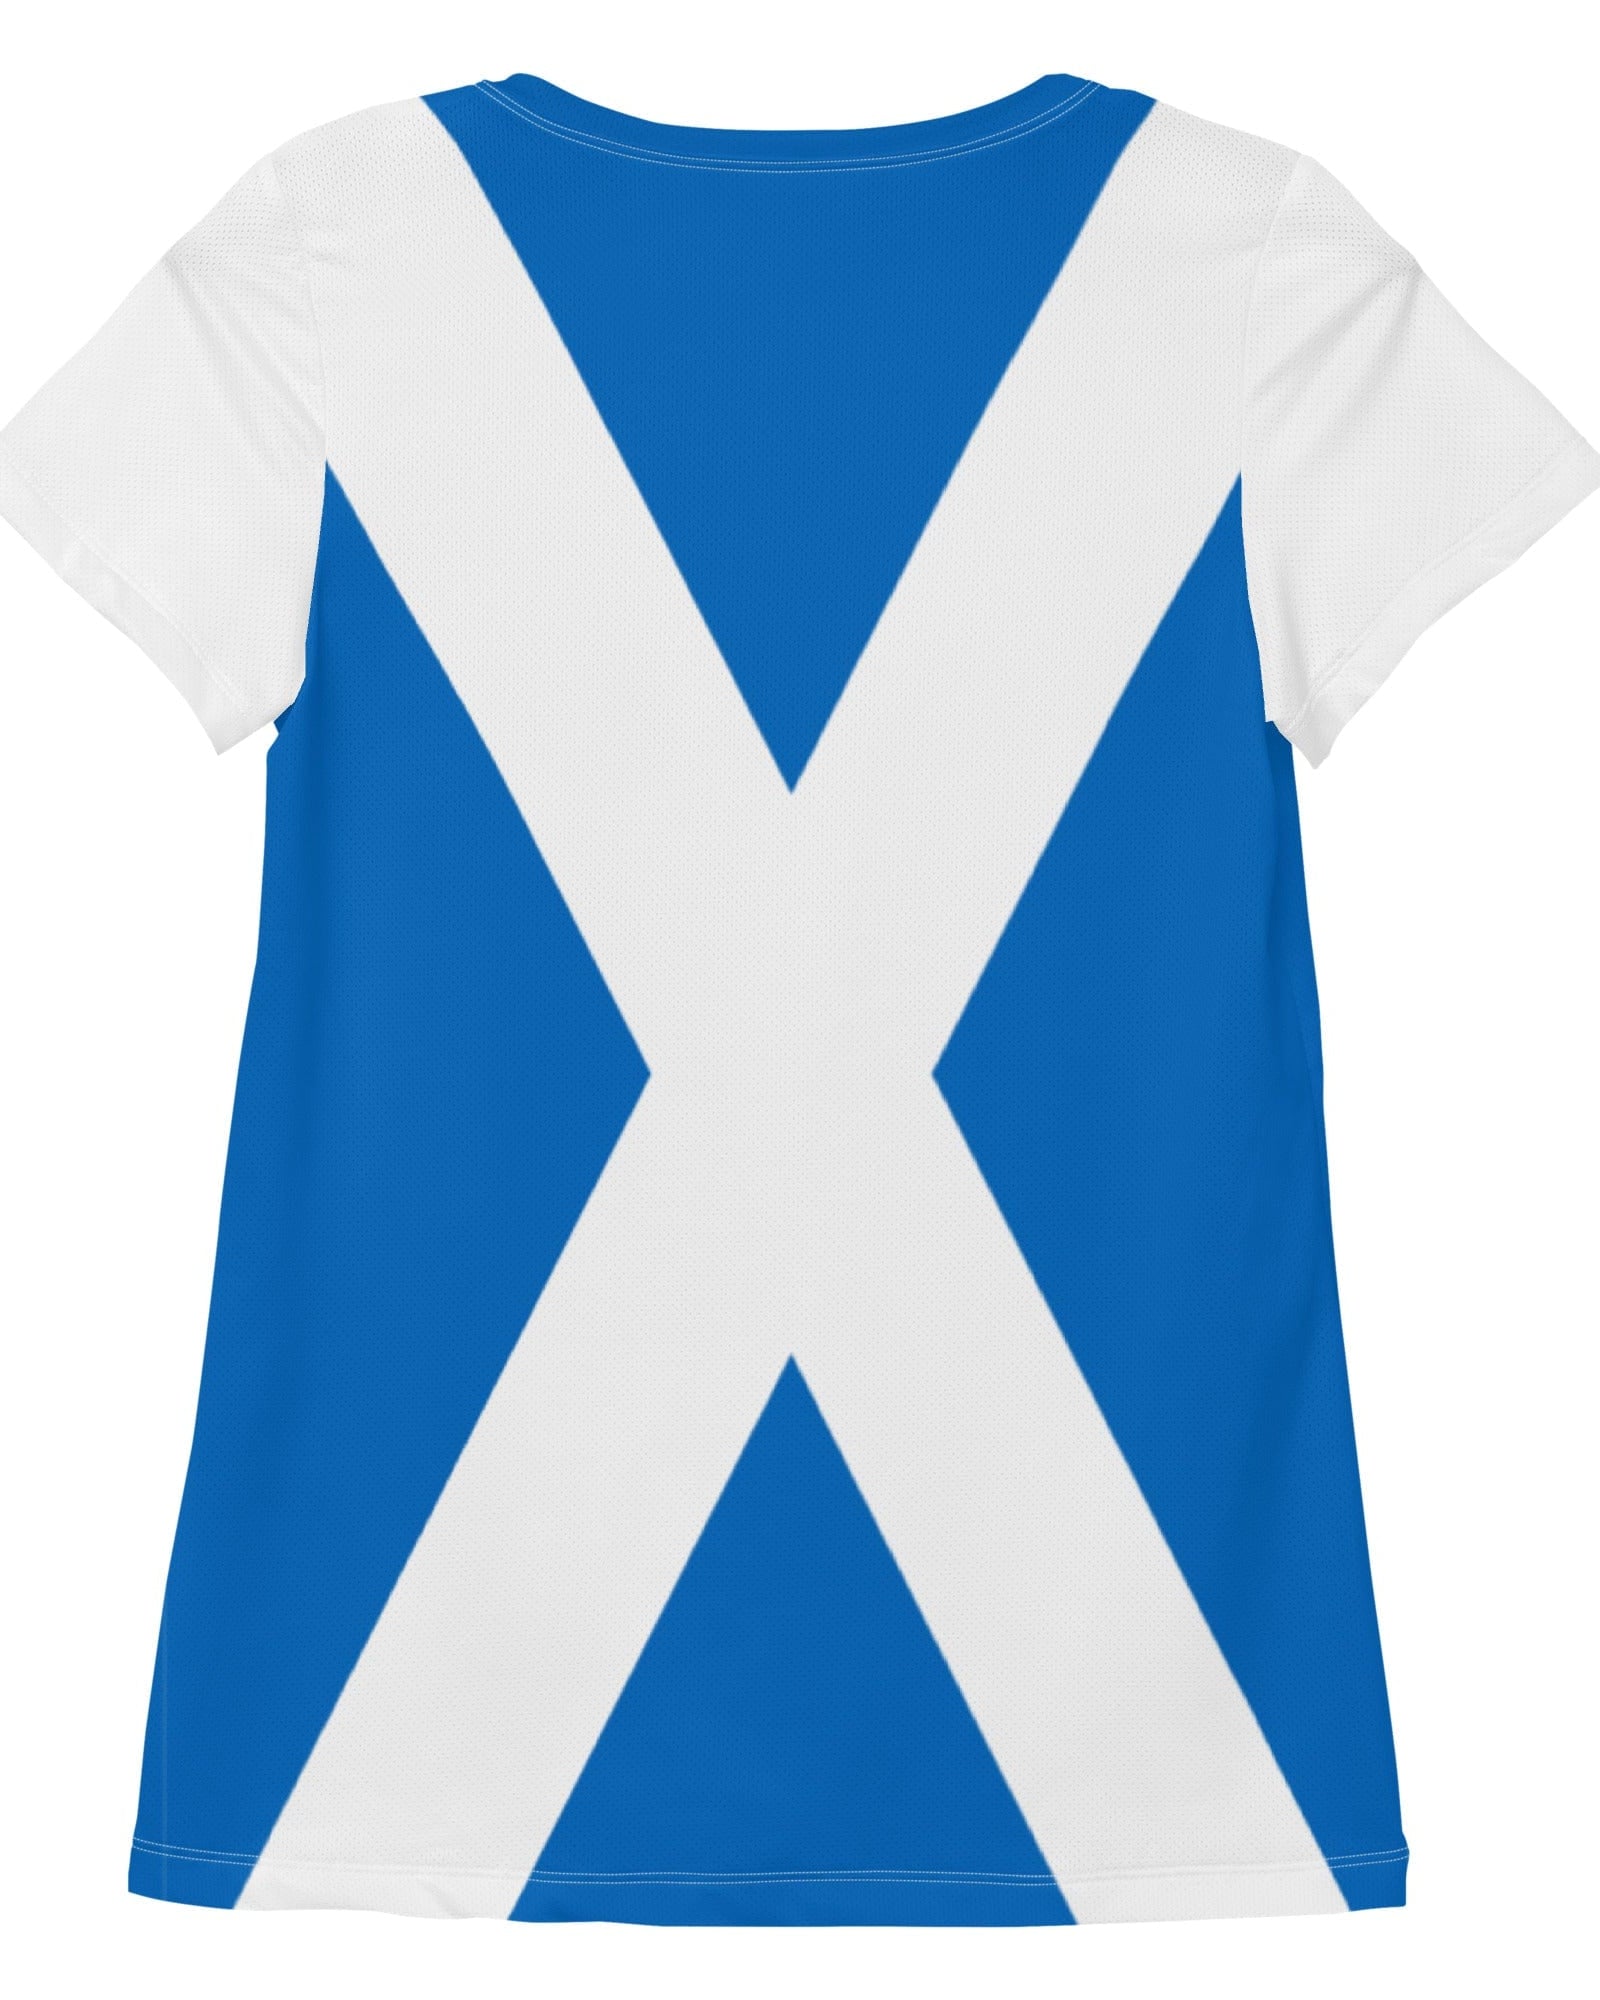 Scotland Thistle Women's Workout Shirt Activewear Jolly & Goode